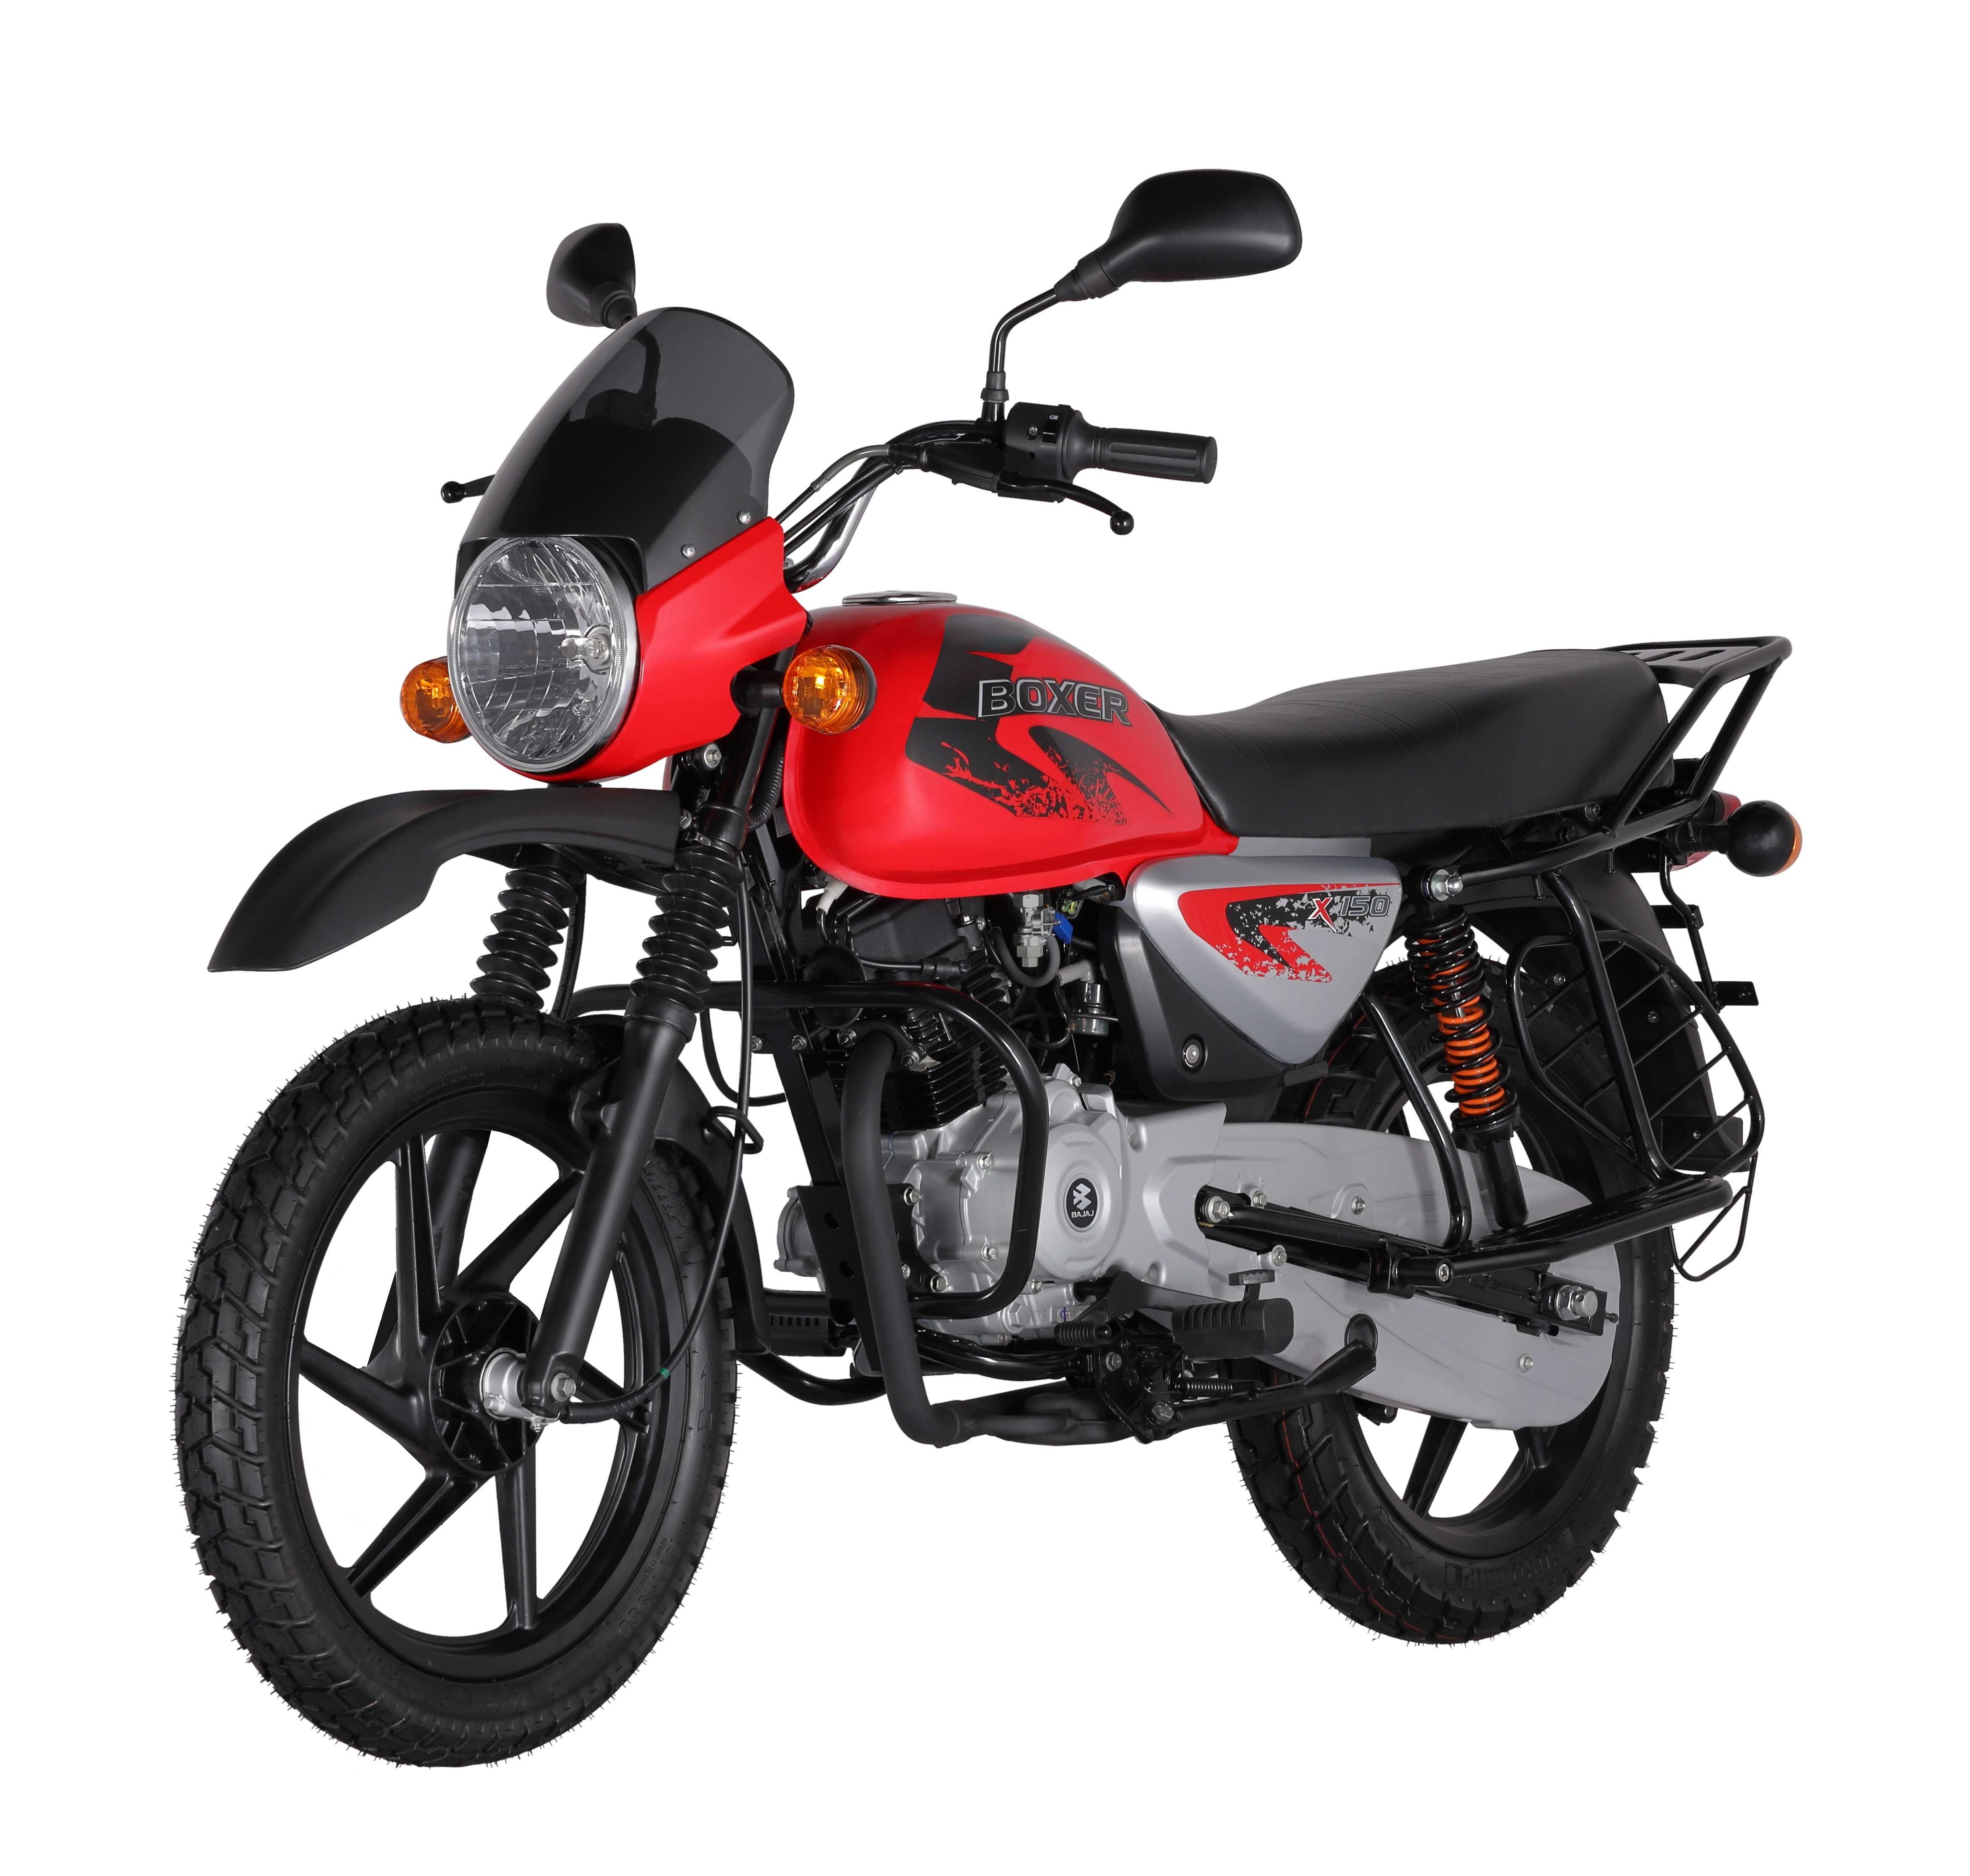 Мотоцикл Bajaj BM150X Cross (Индия) 5ти ступка. Гарантия.